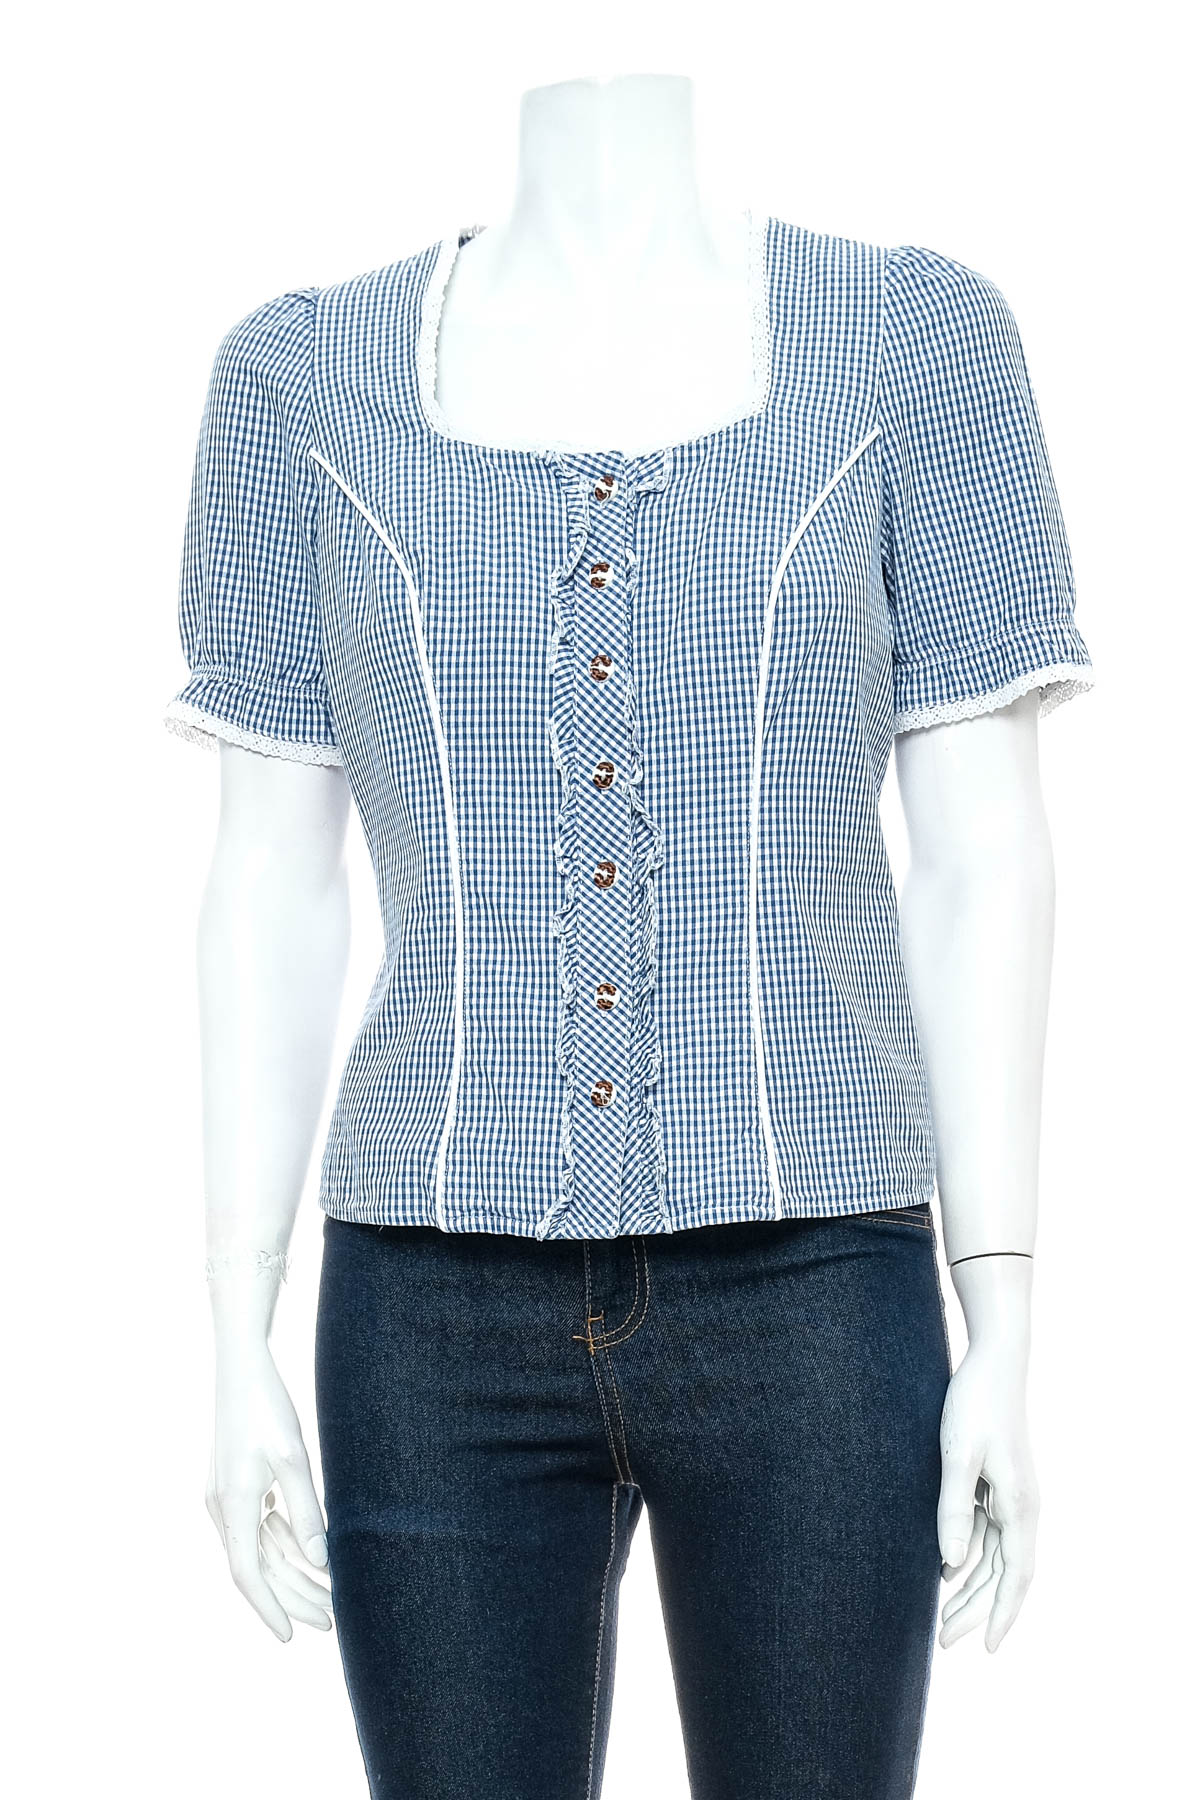 Γυναικείо πουκάμισο - Spieth & Wensky - 0